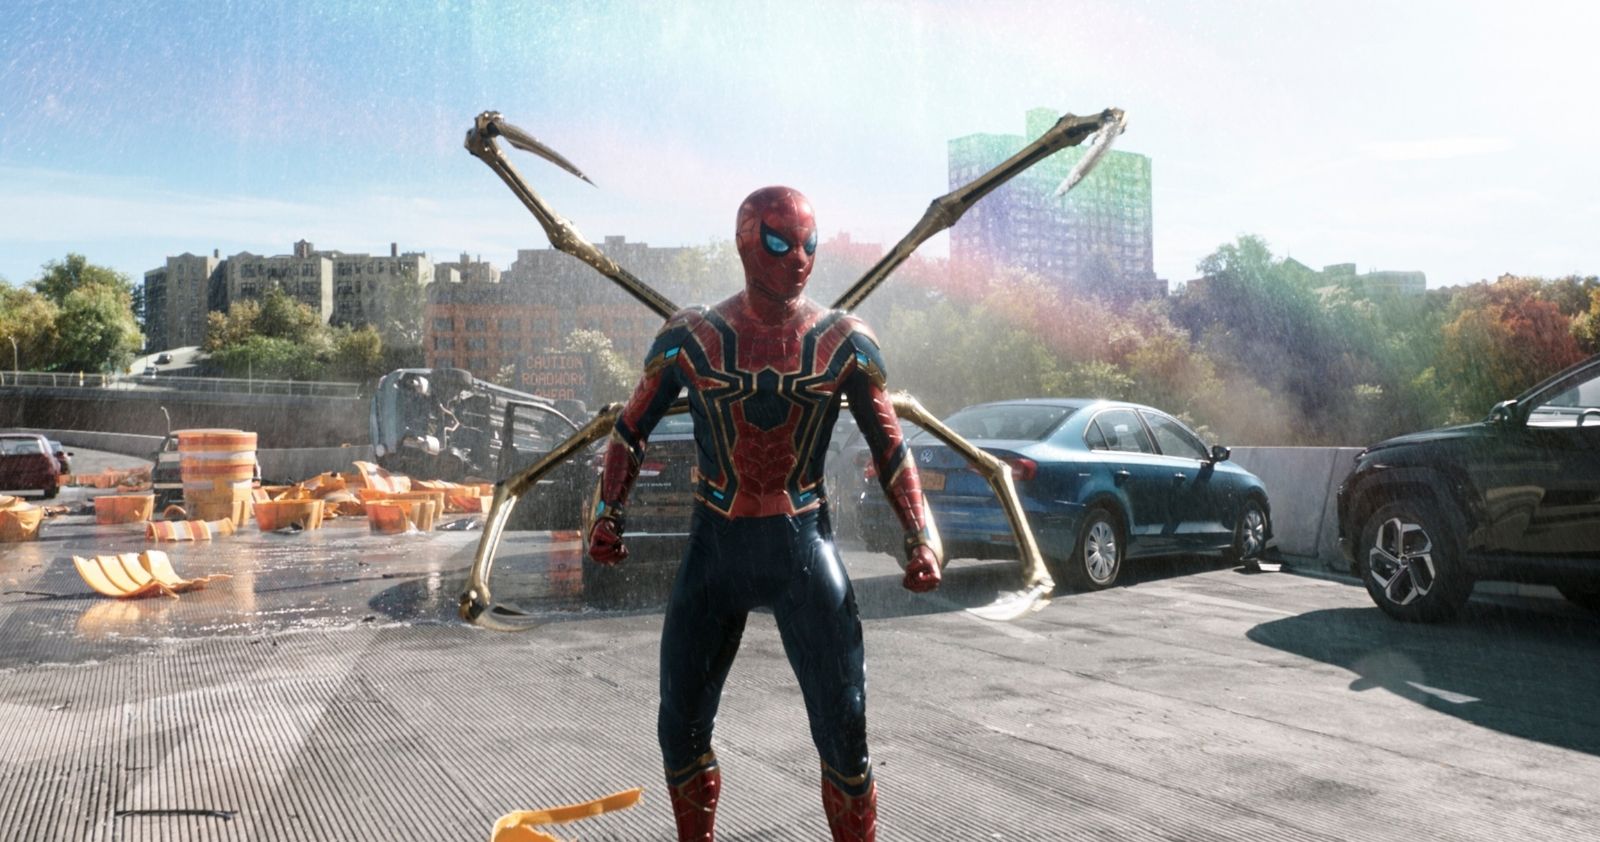 Новый «Человек-паук» стал самым успешным проектом Marvel в России